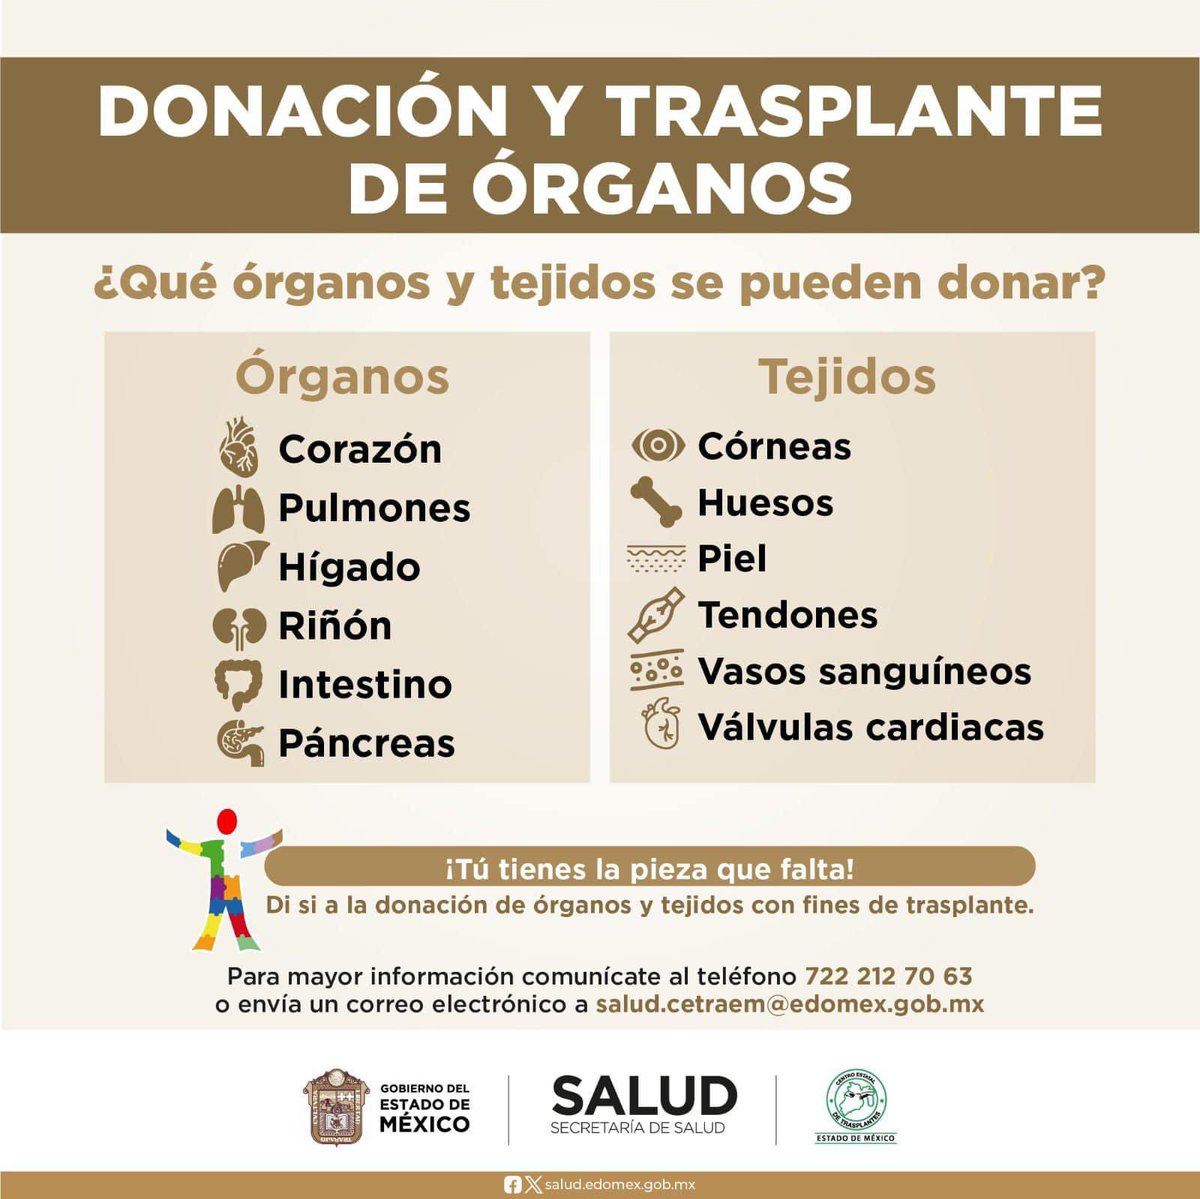 La donación altruista de órganos puede salvar hasta 7 vidas.
Conoce los requisitos para convertirte en una donadora o donador altruista, ingresa:
 cetraem.edomex.gob.mx.
¡Tu puedes ser un donador altruista!
#DonarÓrganosEsDonarVida